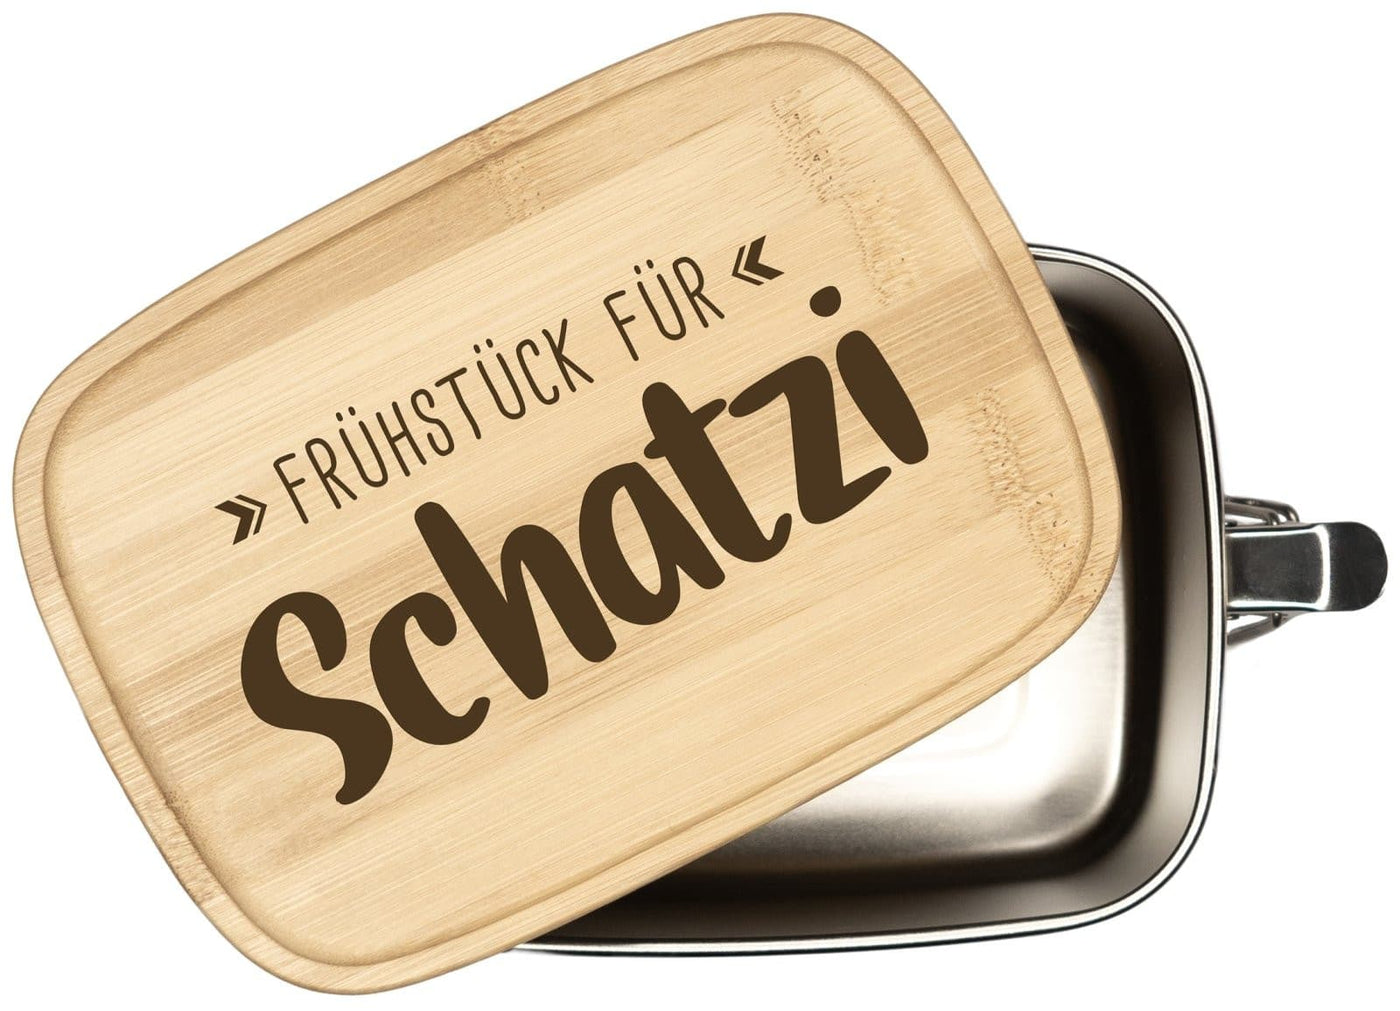 Bild: Brotdose - Frühstück für Schatzi - Edelstahl mit Bambusdeckel Geschenkidee